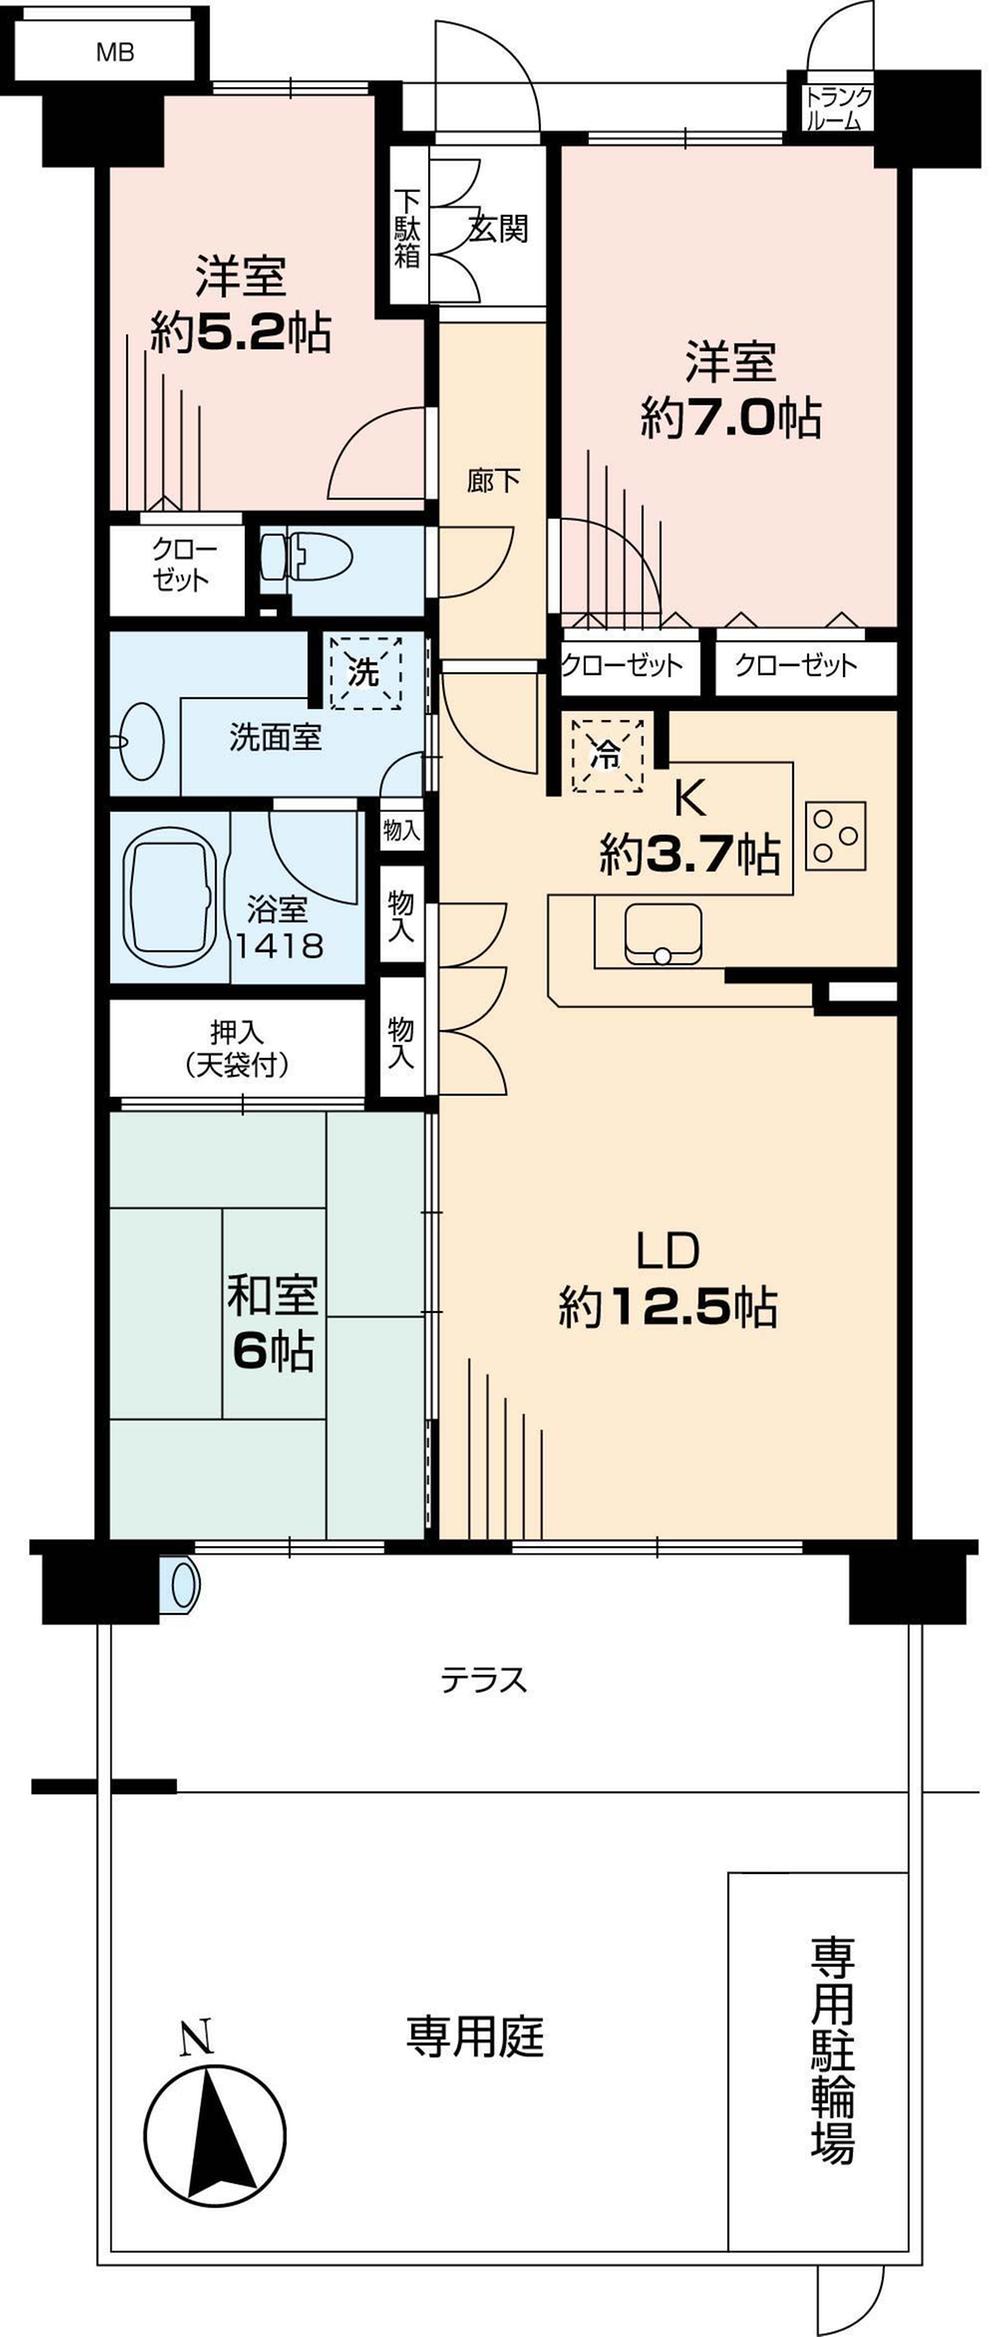 Floor plan. 3LDK, Price 29,900,000 yen, Occupied area 75.59 sq m